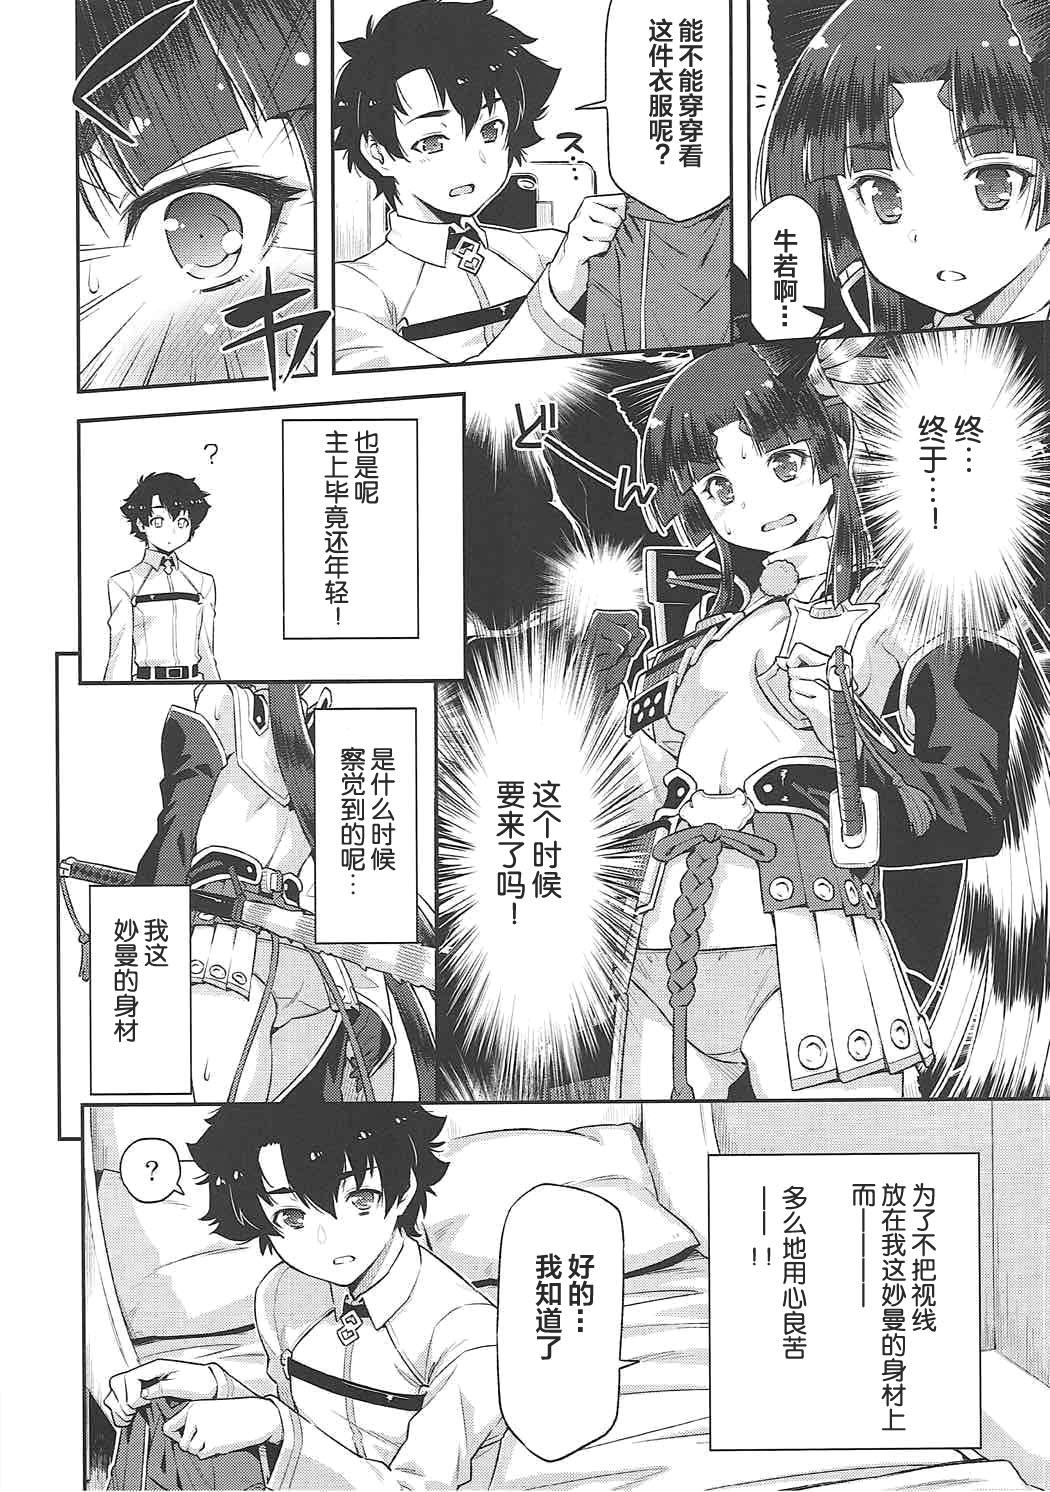 Transsexual Aruji-dono no Nozomi to Araba! - Fate grand order Publico - Page 6